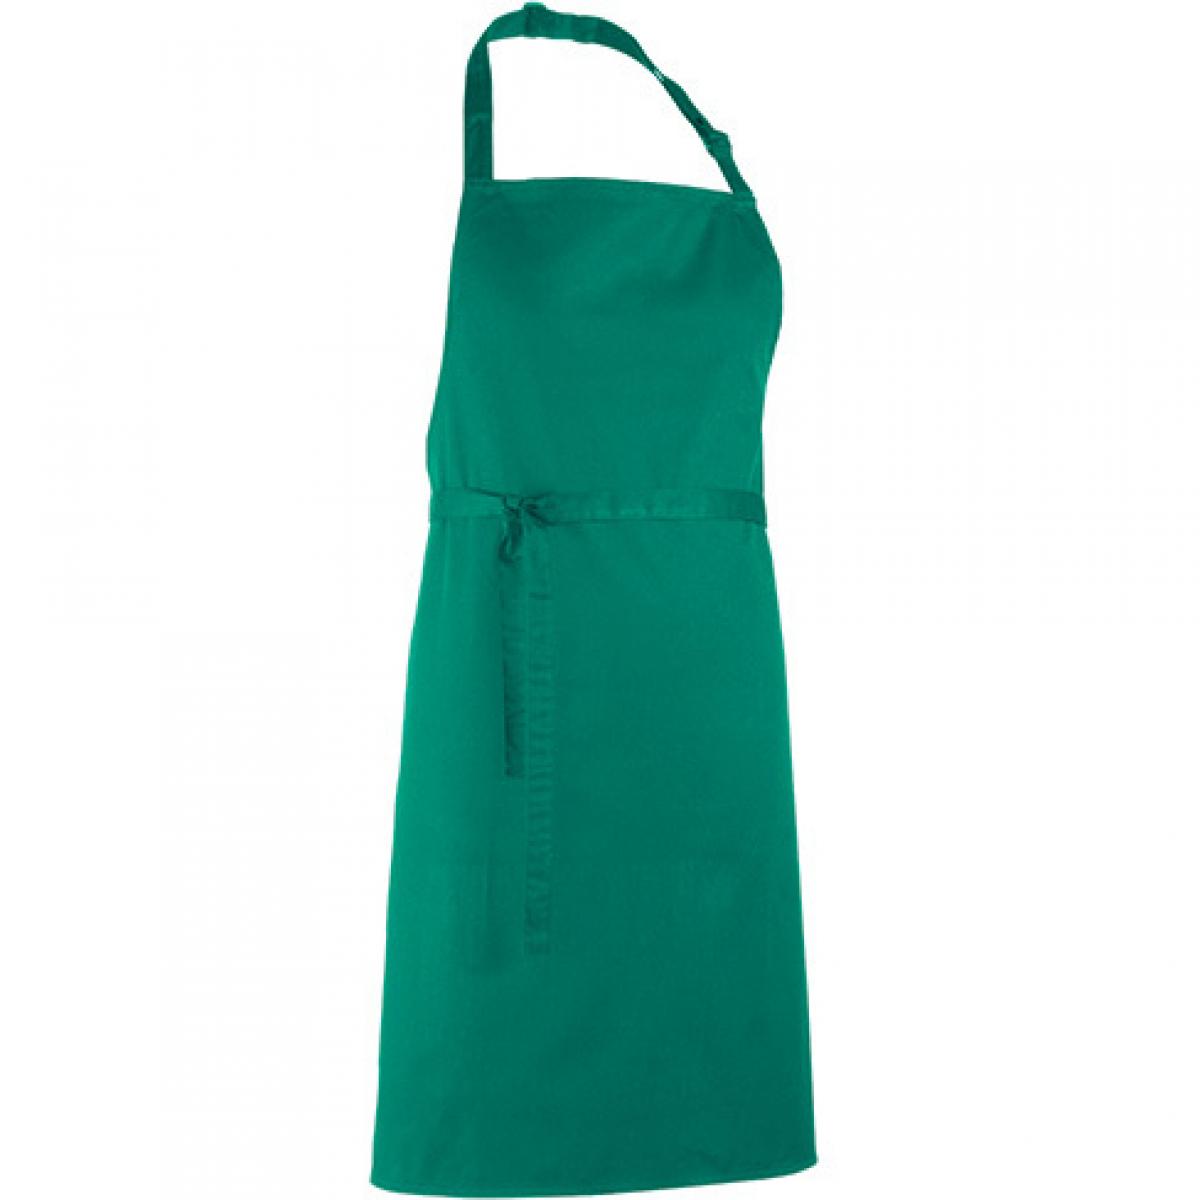 Hersteller: Premier Workwear Herstellernummer: PR150 Artikelbezeichnung: Latzschürze ´Colours´ - Waschbar bei 60 °C Farbe: Emerald (ca. Pantone 341)